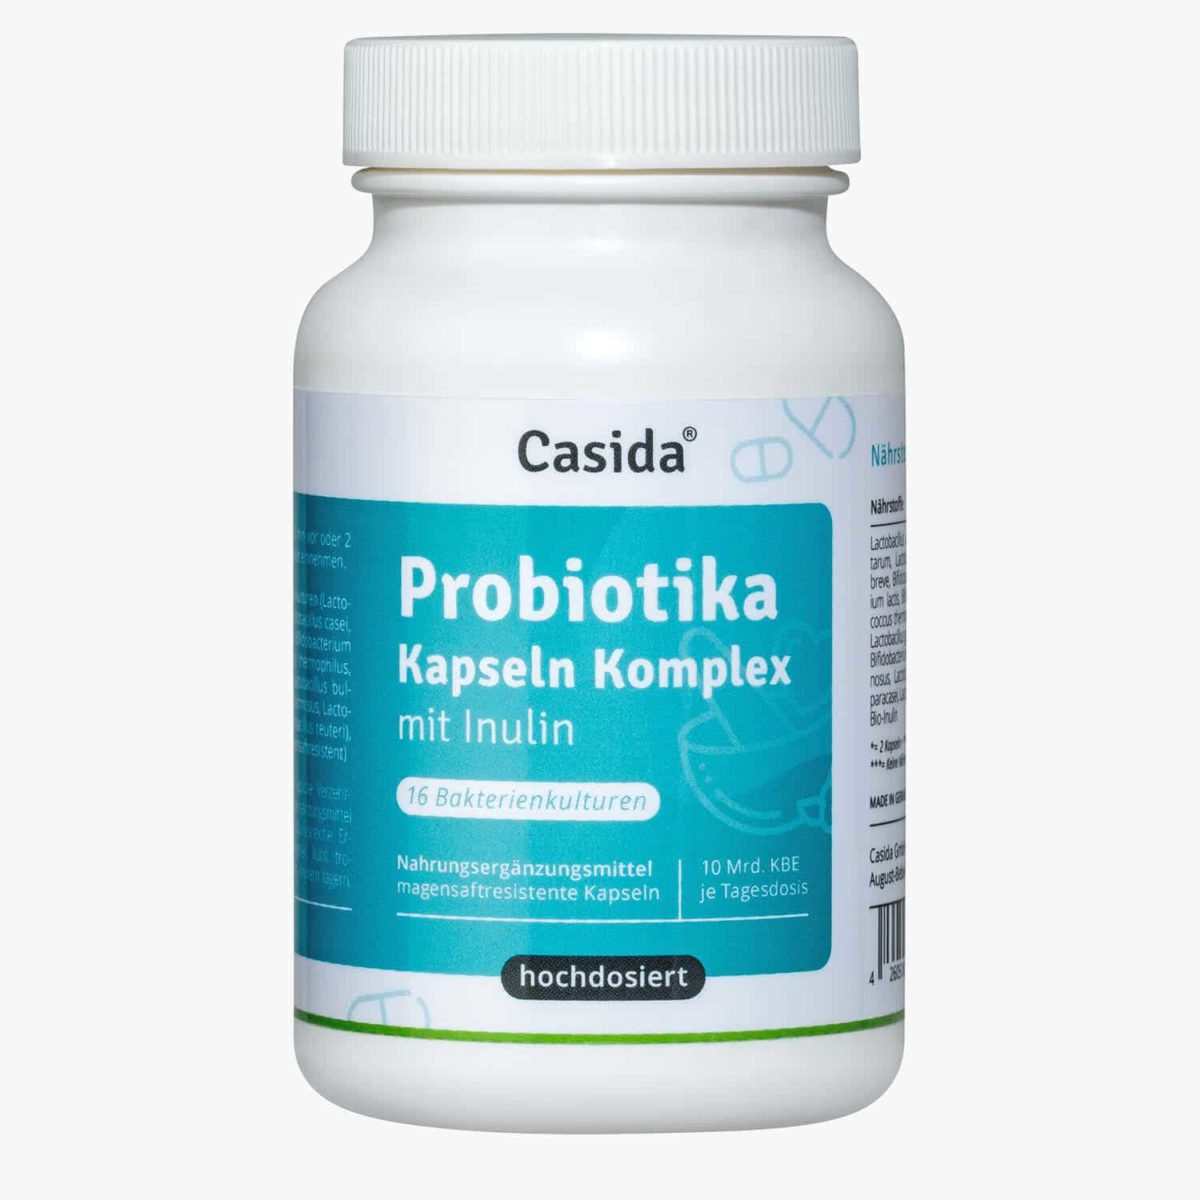 Casida Probiotika Kapseln Komplex + Inulin 120 Stk. PZN DE 14446656 PZN AT 4918491 UVP 25,99 € EAN 4260518460314 Darmflora Darmsanierung Präbiotika